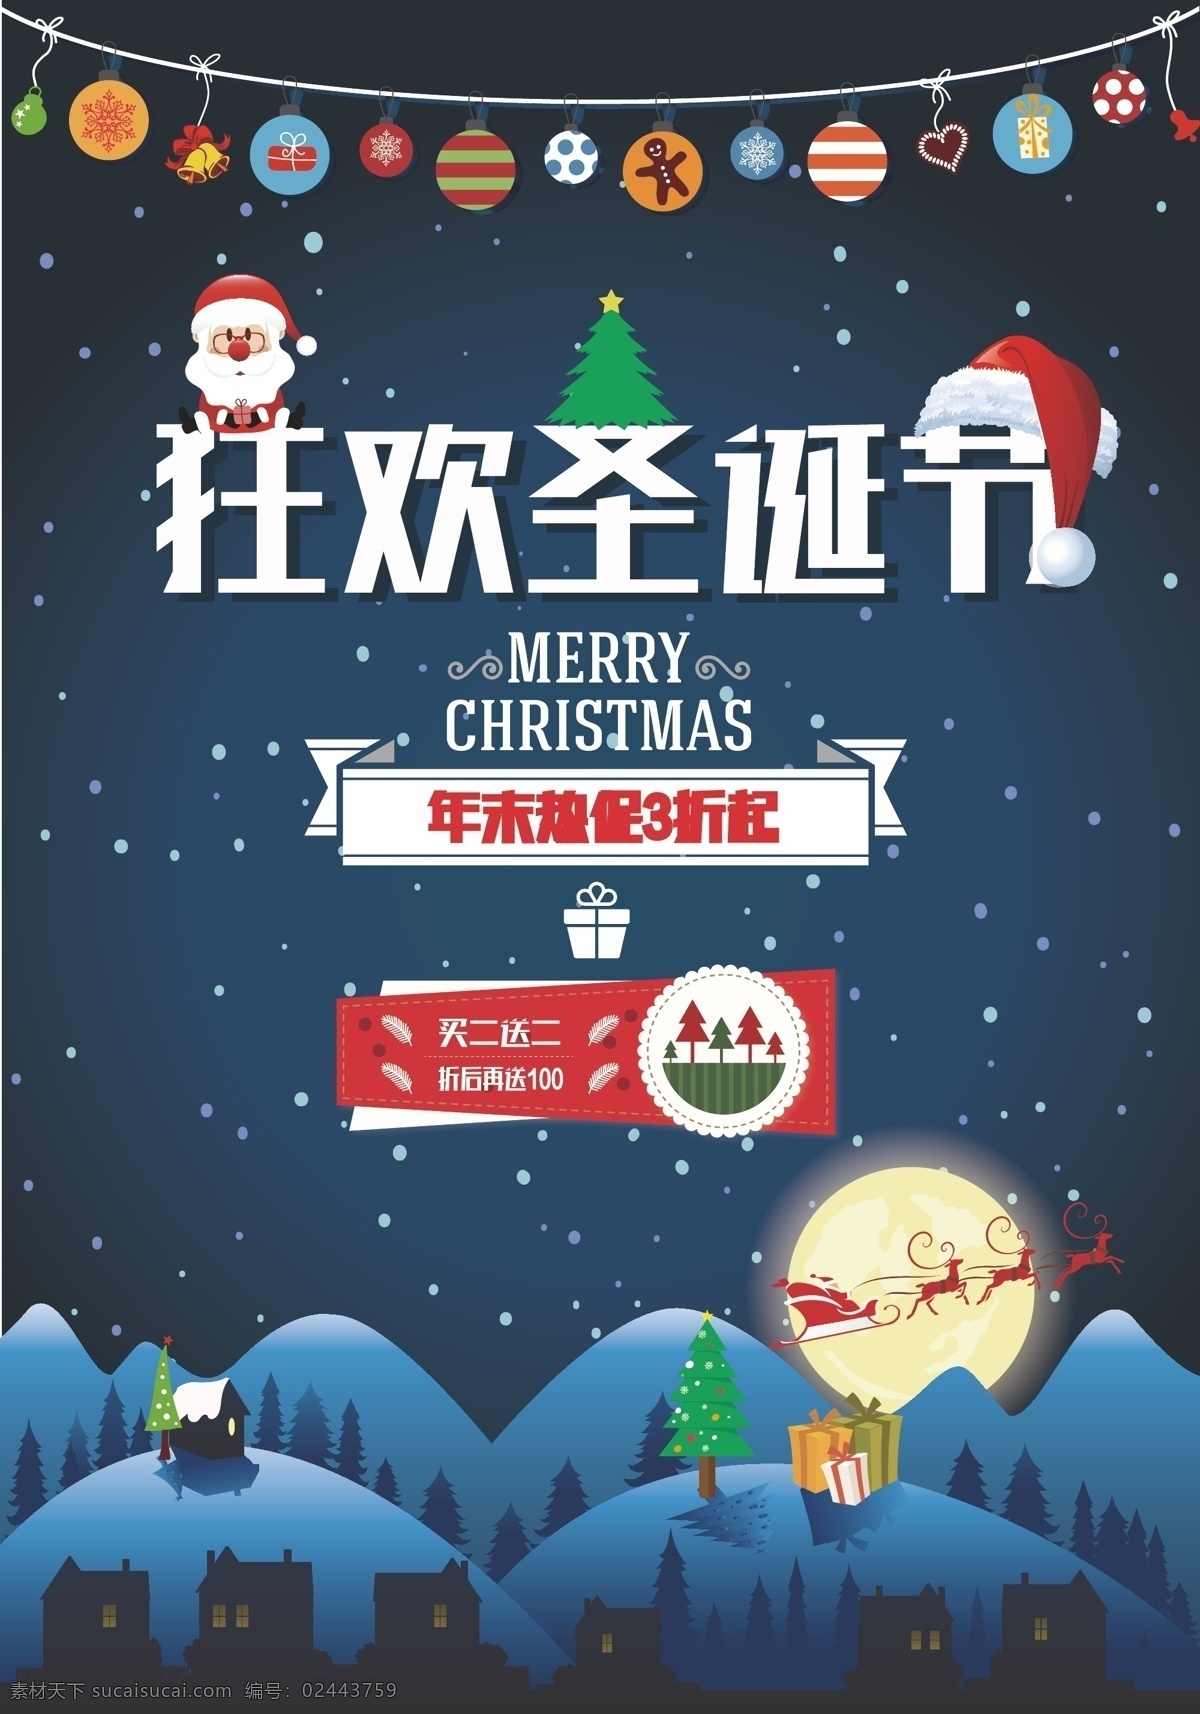 狂欢 圣诞节 背景 蓝色 卡通 雪夜 圣诞 海报 矢量 活动